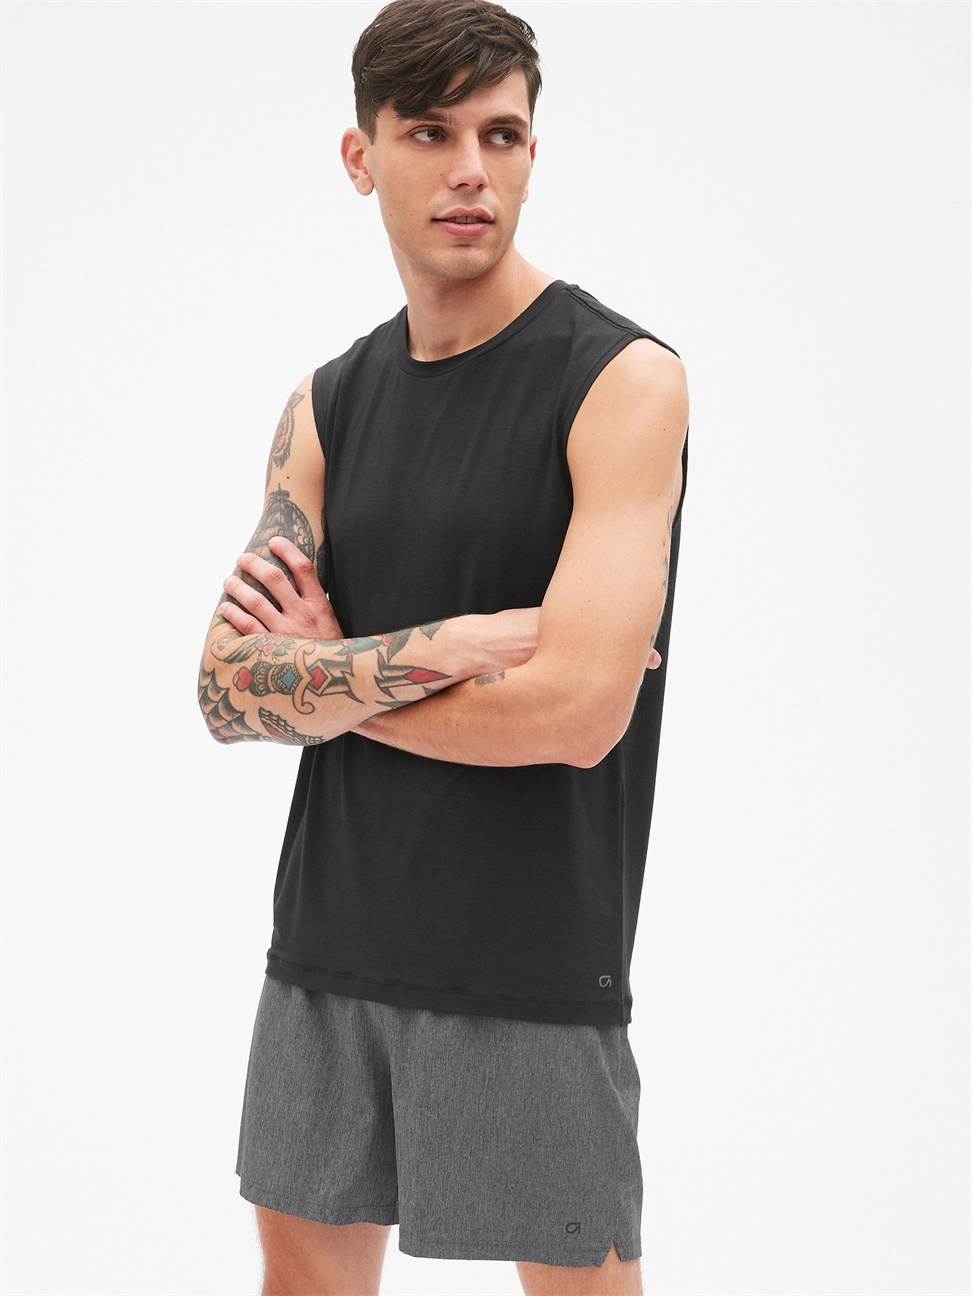 男裝|透氣無袖圓領運動T恤 Gap Fit運動系列-純正黑色